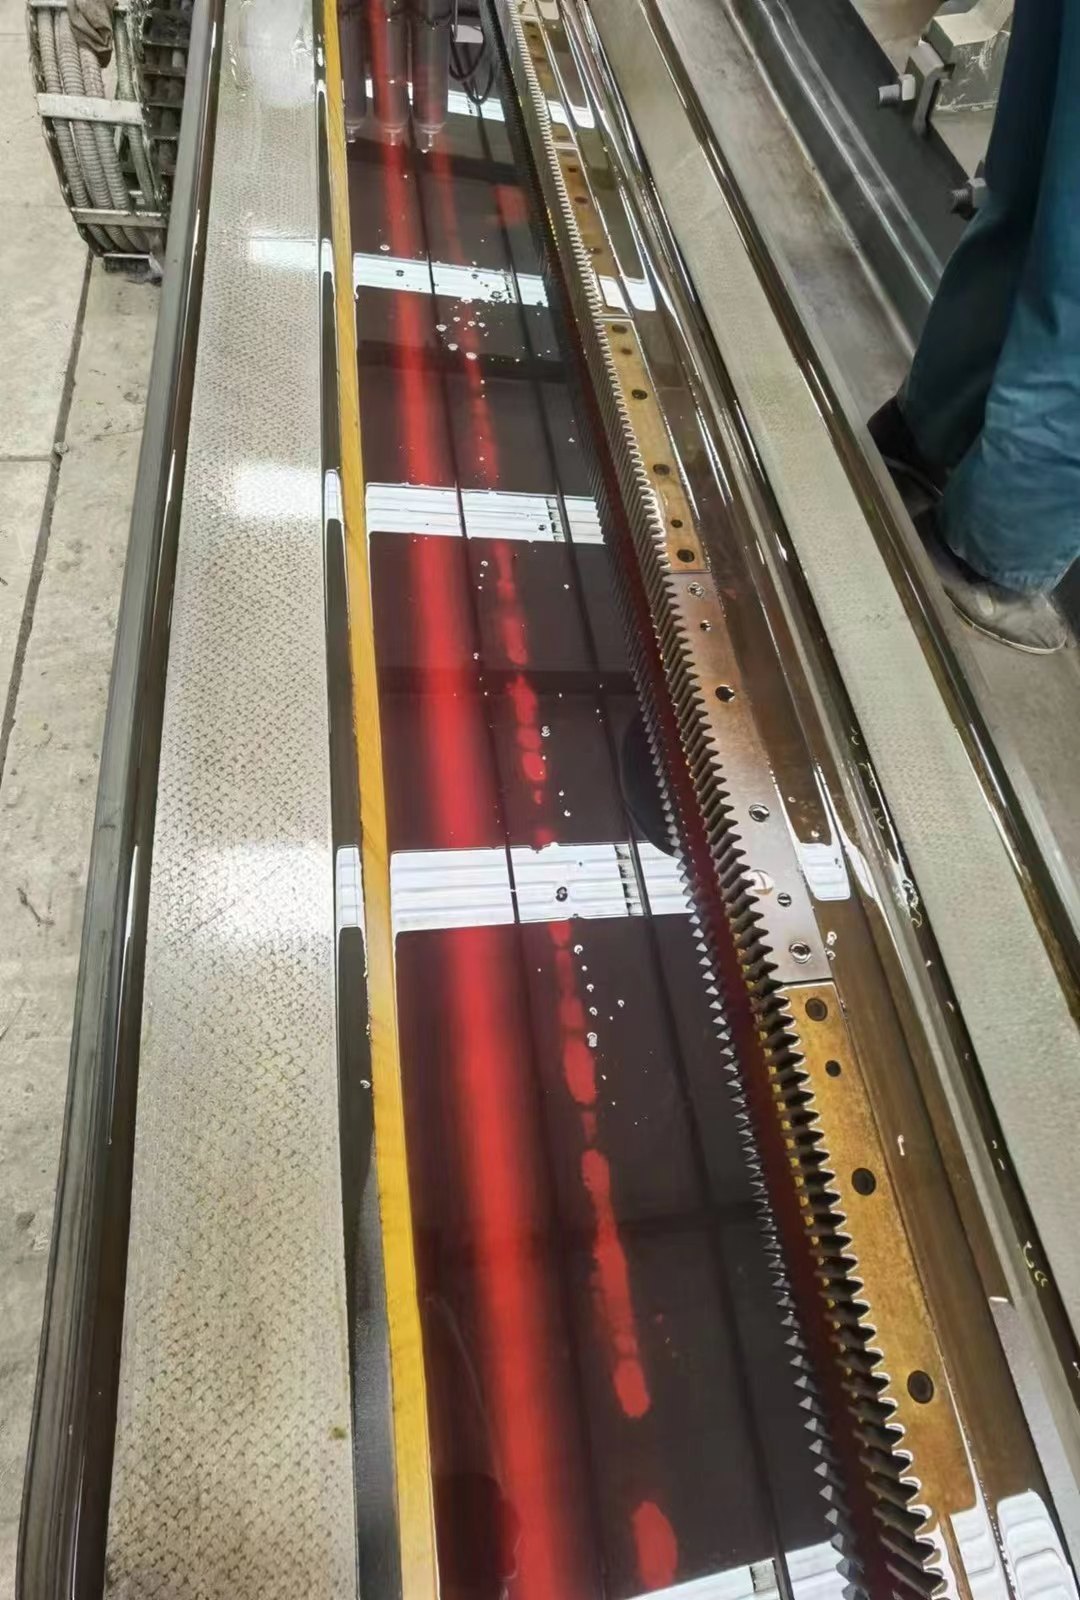 上海机床厂H247专用外圆磨床，回转直径8009.5米安装.